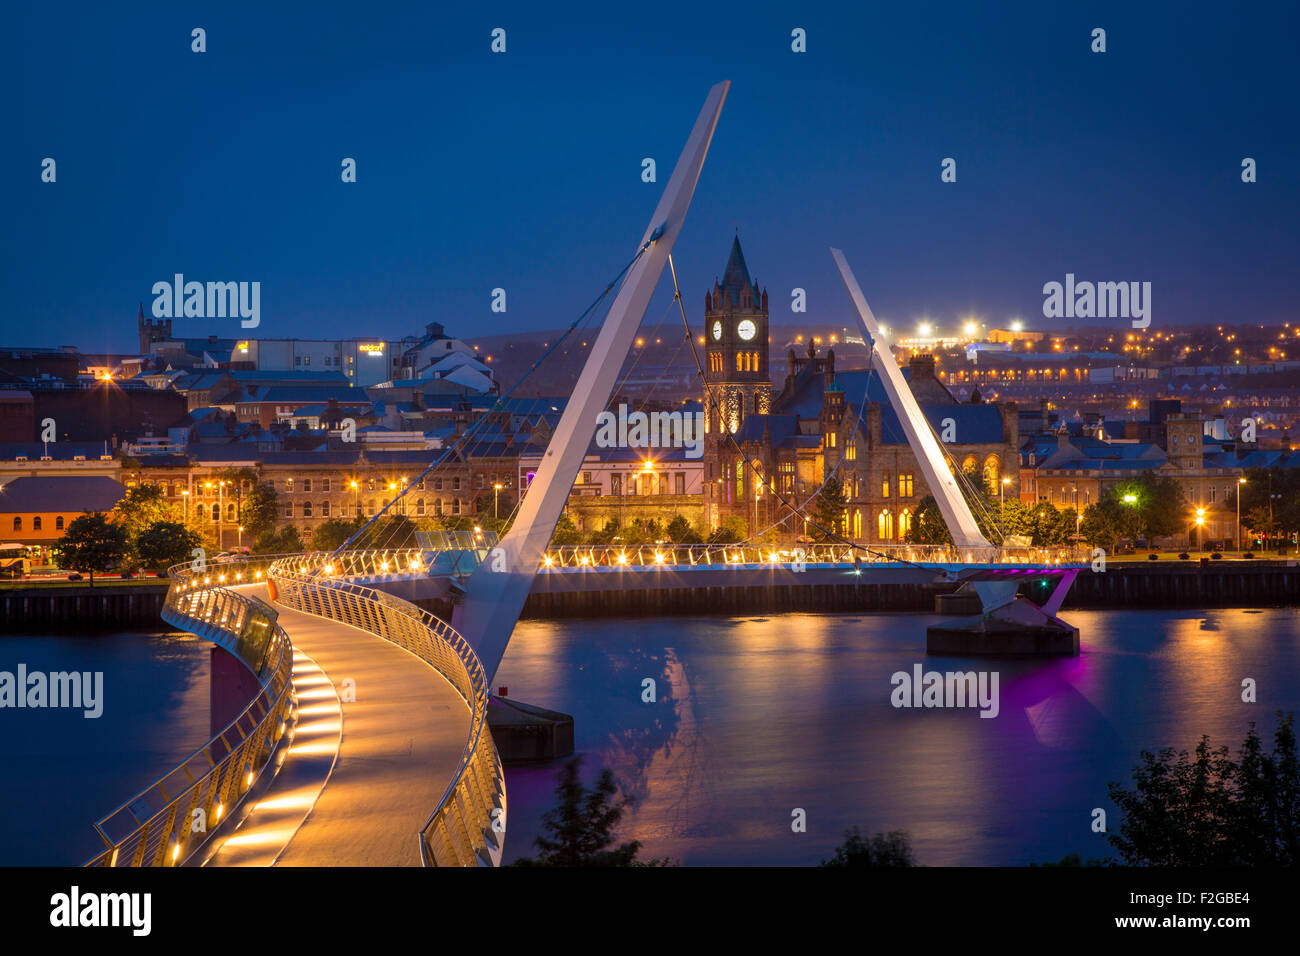 Le crépuscule sur le pont de la paix et les toits de Londonderry/Derry, County Londonderry, Irlande du Nord, Royaume-Uni Banque D'Images